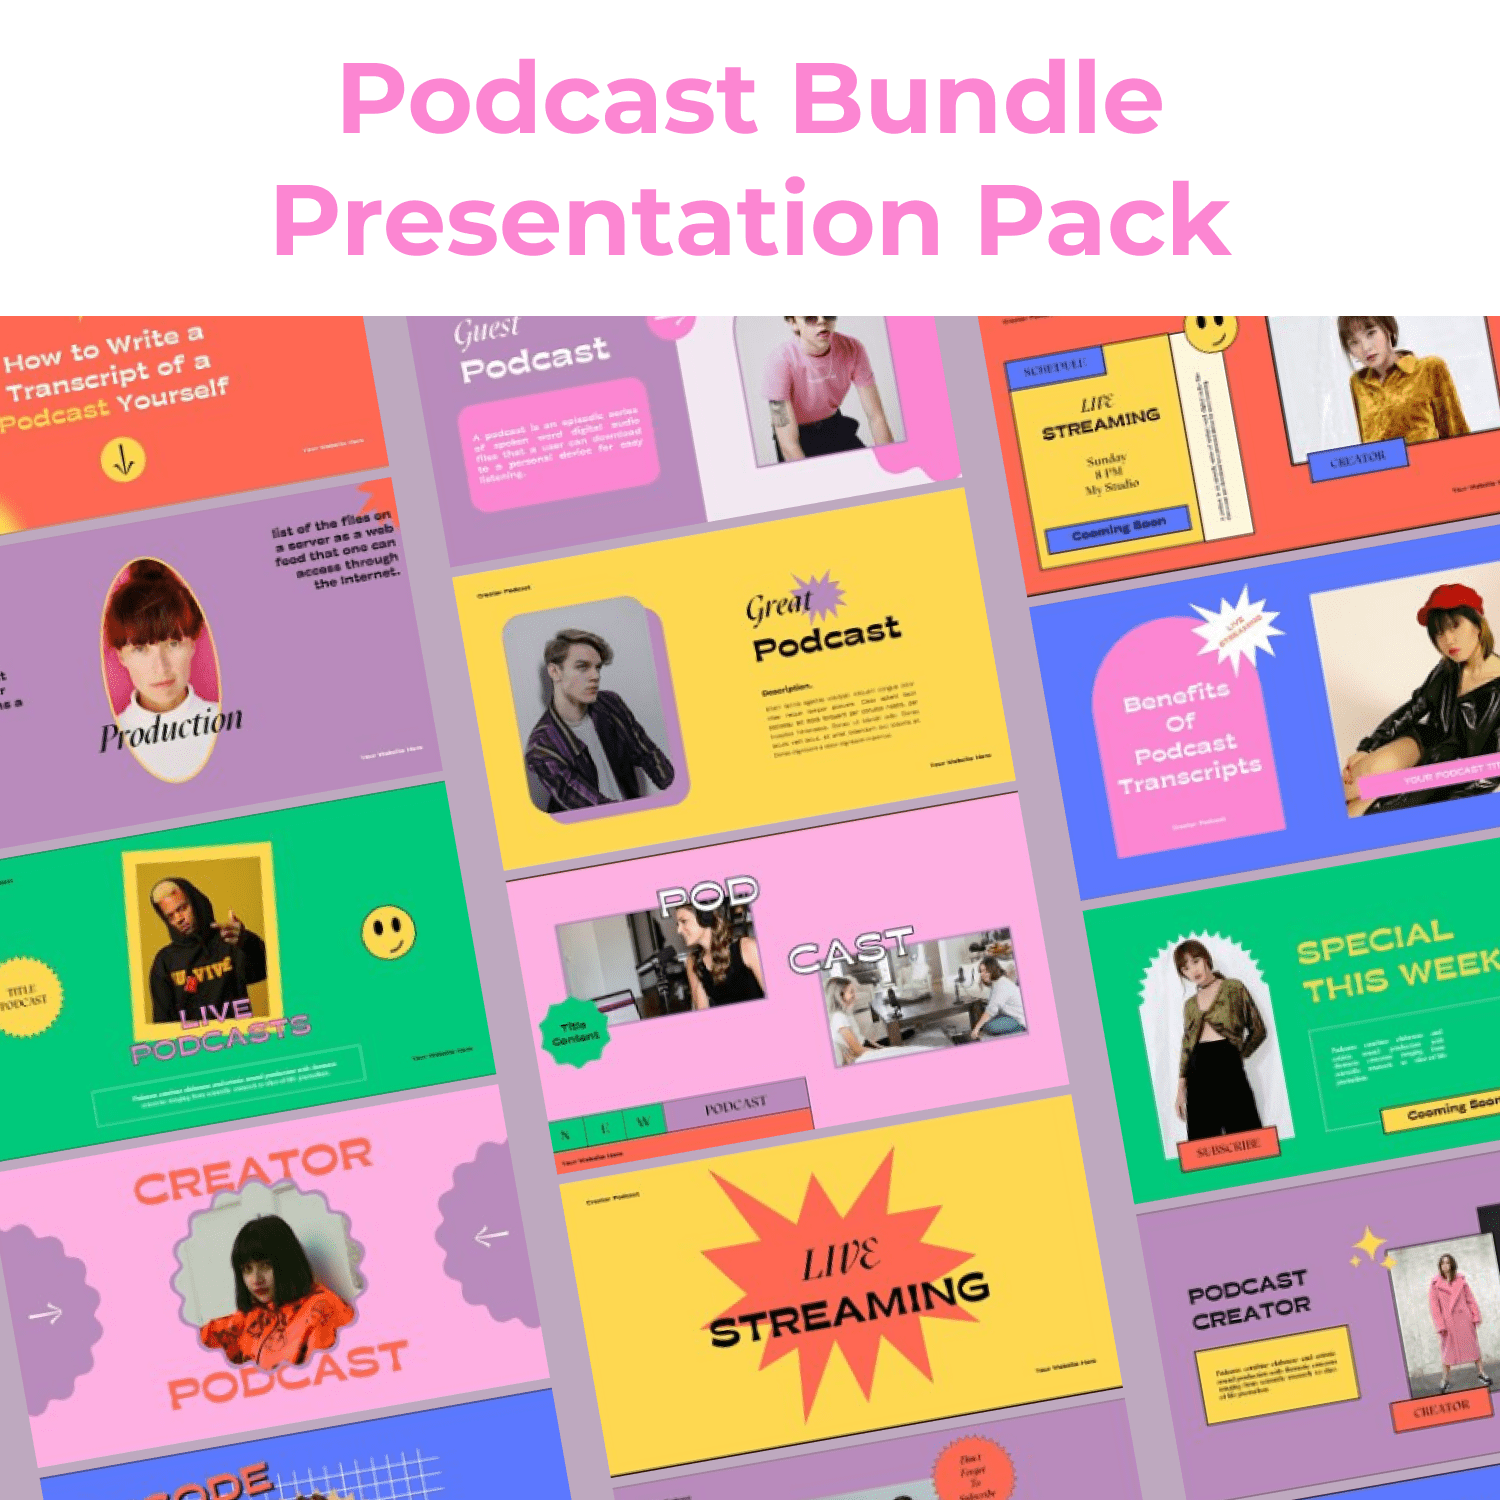 Podcast Bundle Presentation Pack cover image.